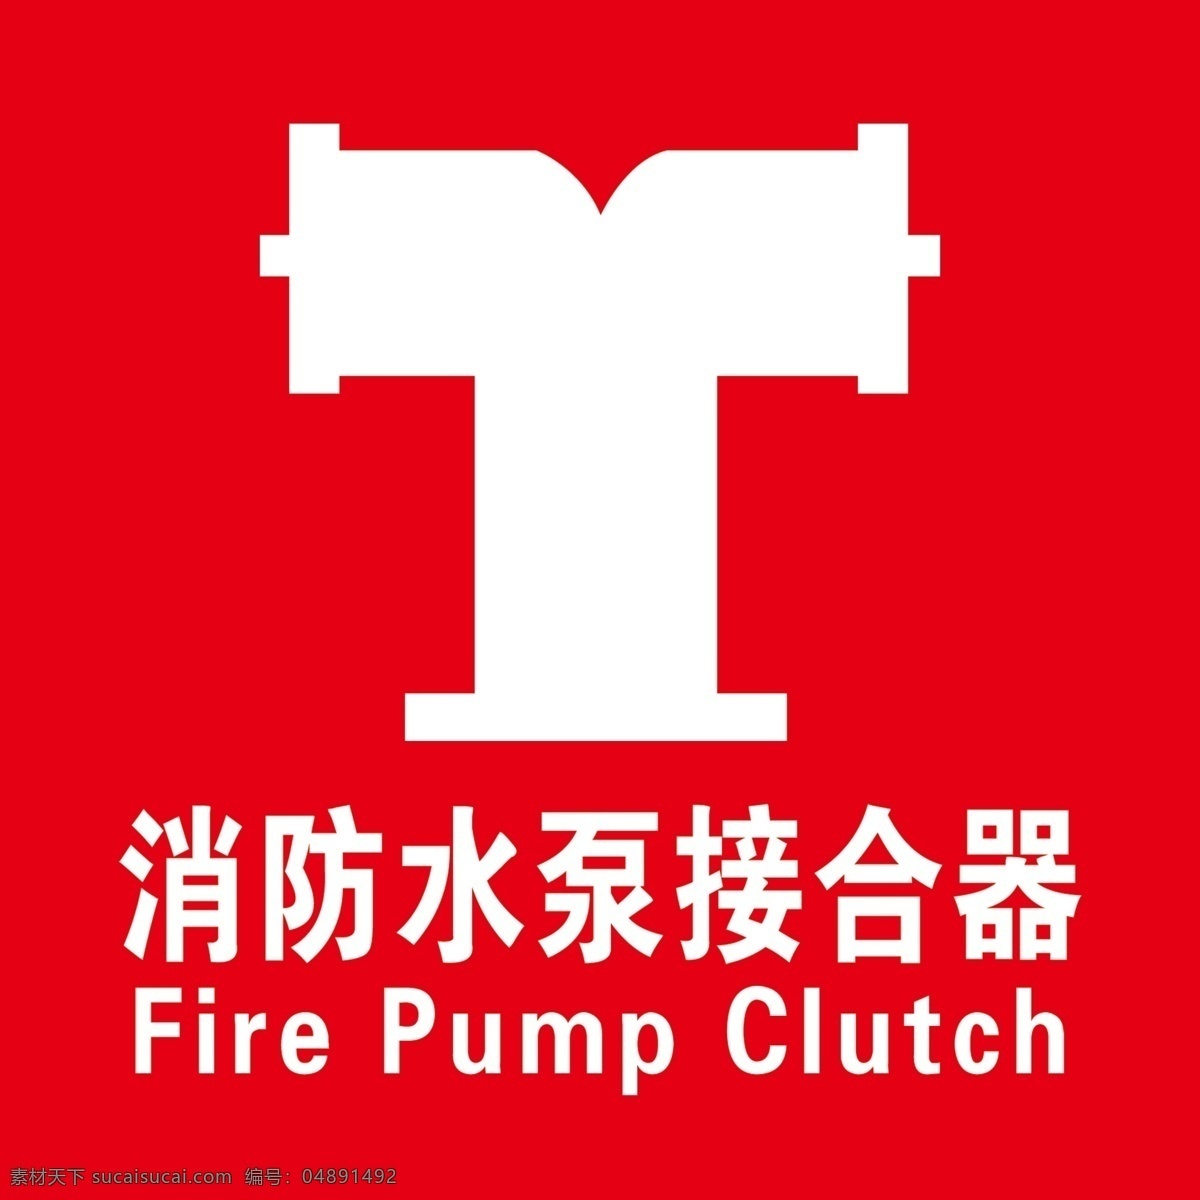 消防 水泵 接合器 消防水泵 红色 消防标识标志 fire pump clutch 标志图标 公共标识标志